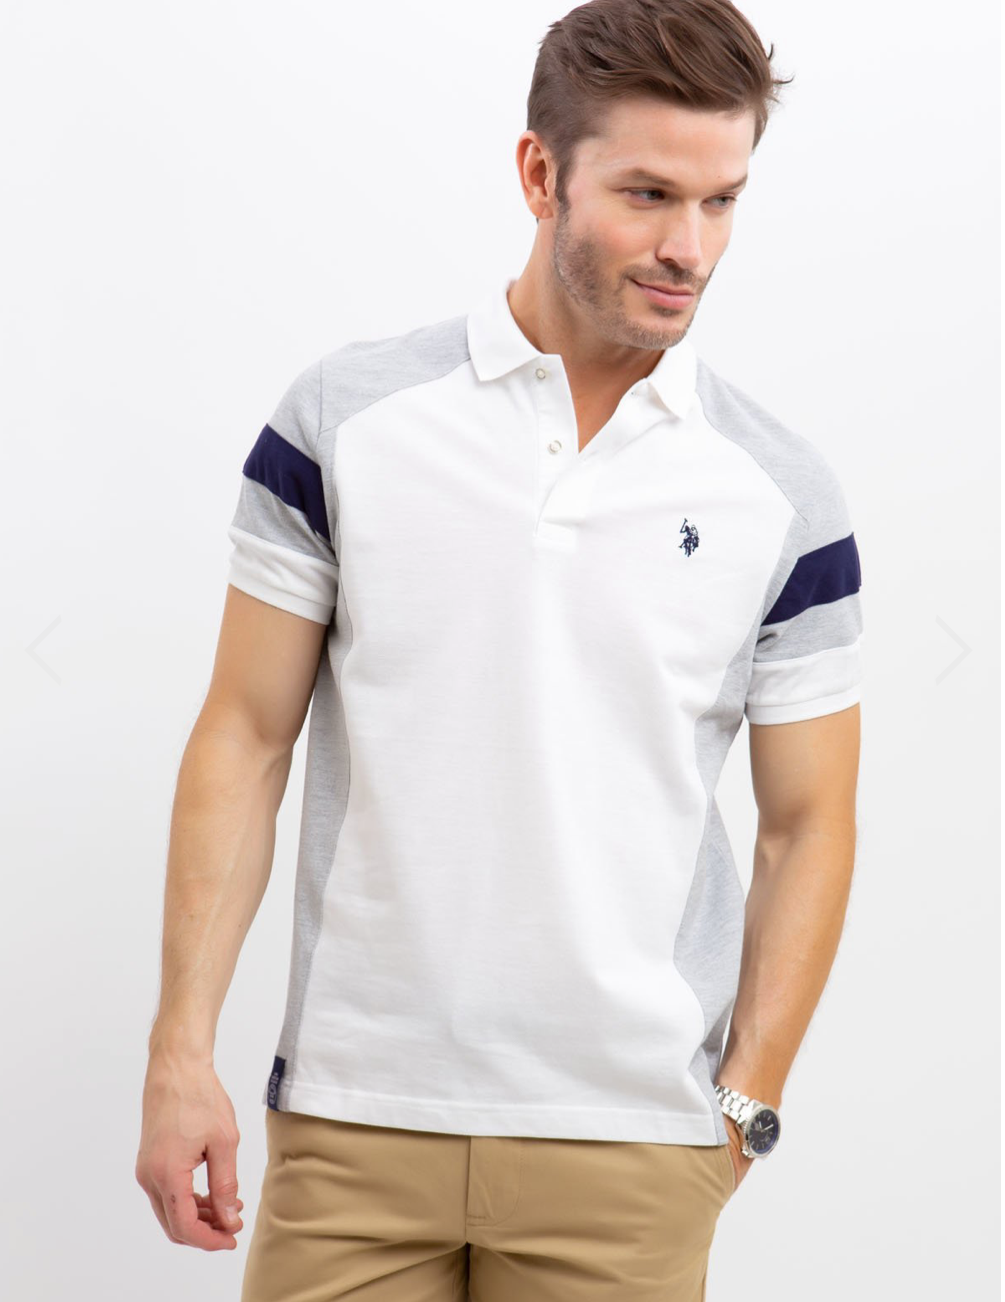 Polo shirts uspa knits men U.S. Polo Assn. stripe Color Block cut & sew polo Menswear